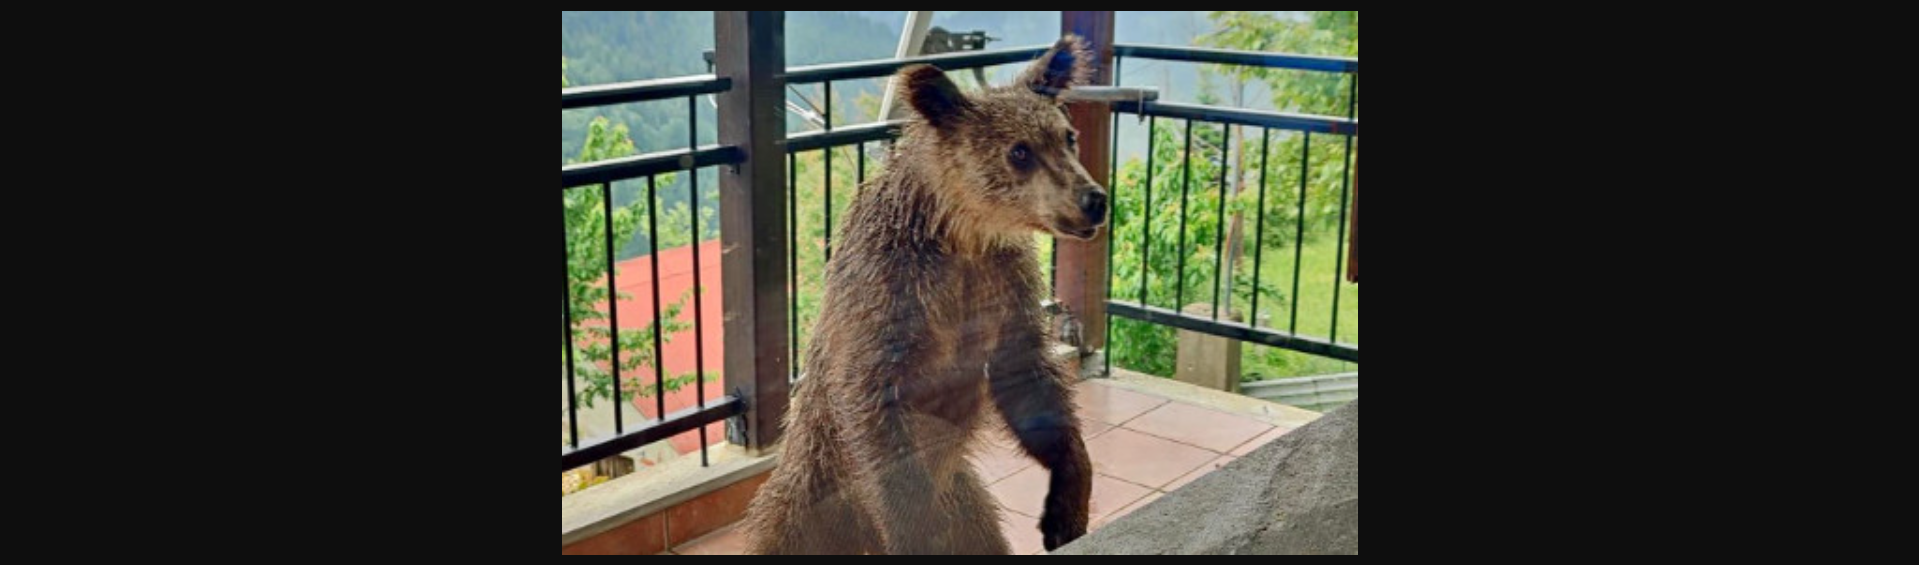 Πίνδος: Μικρή αρκούδα βρέθηκε σε μπαλκόνι σπιτιού – «Λυπηρό να καταντά φωτογραφική ατραξιόν»